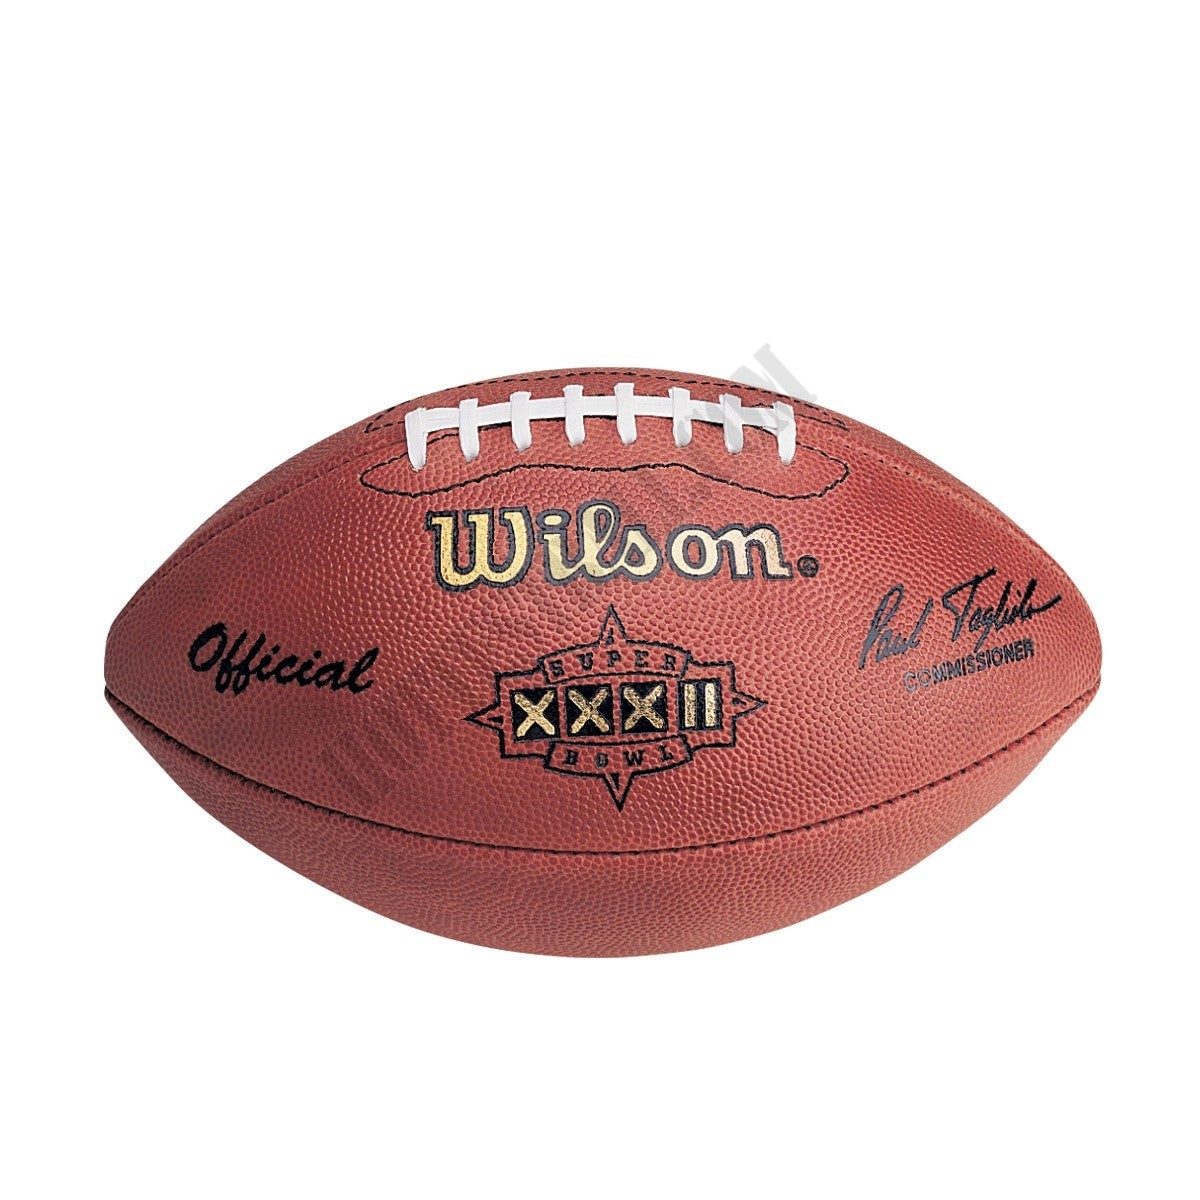 Super Bowl XXXII Game Football - Denver Broncos ● Wilson Promotions - Super Bowl XXXII Game Football - Denver Broncos ● Wilson Promotions